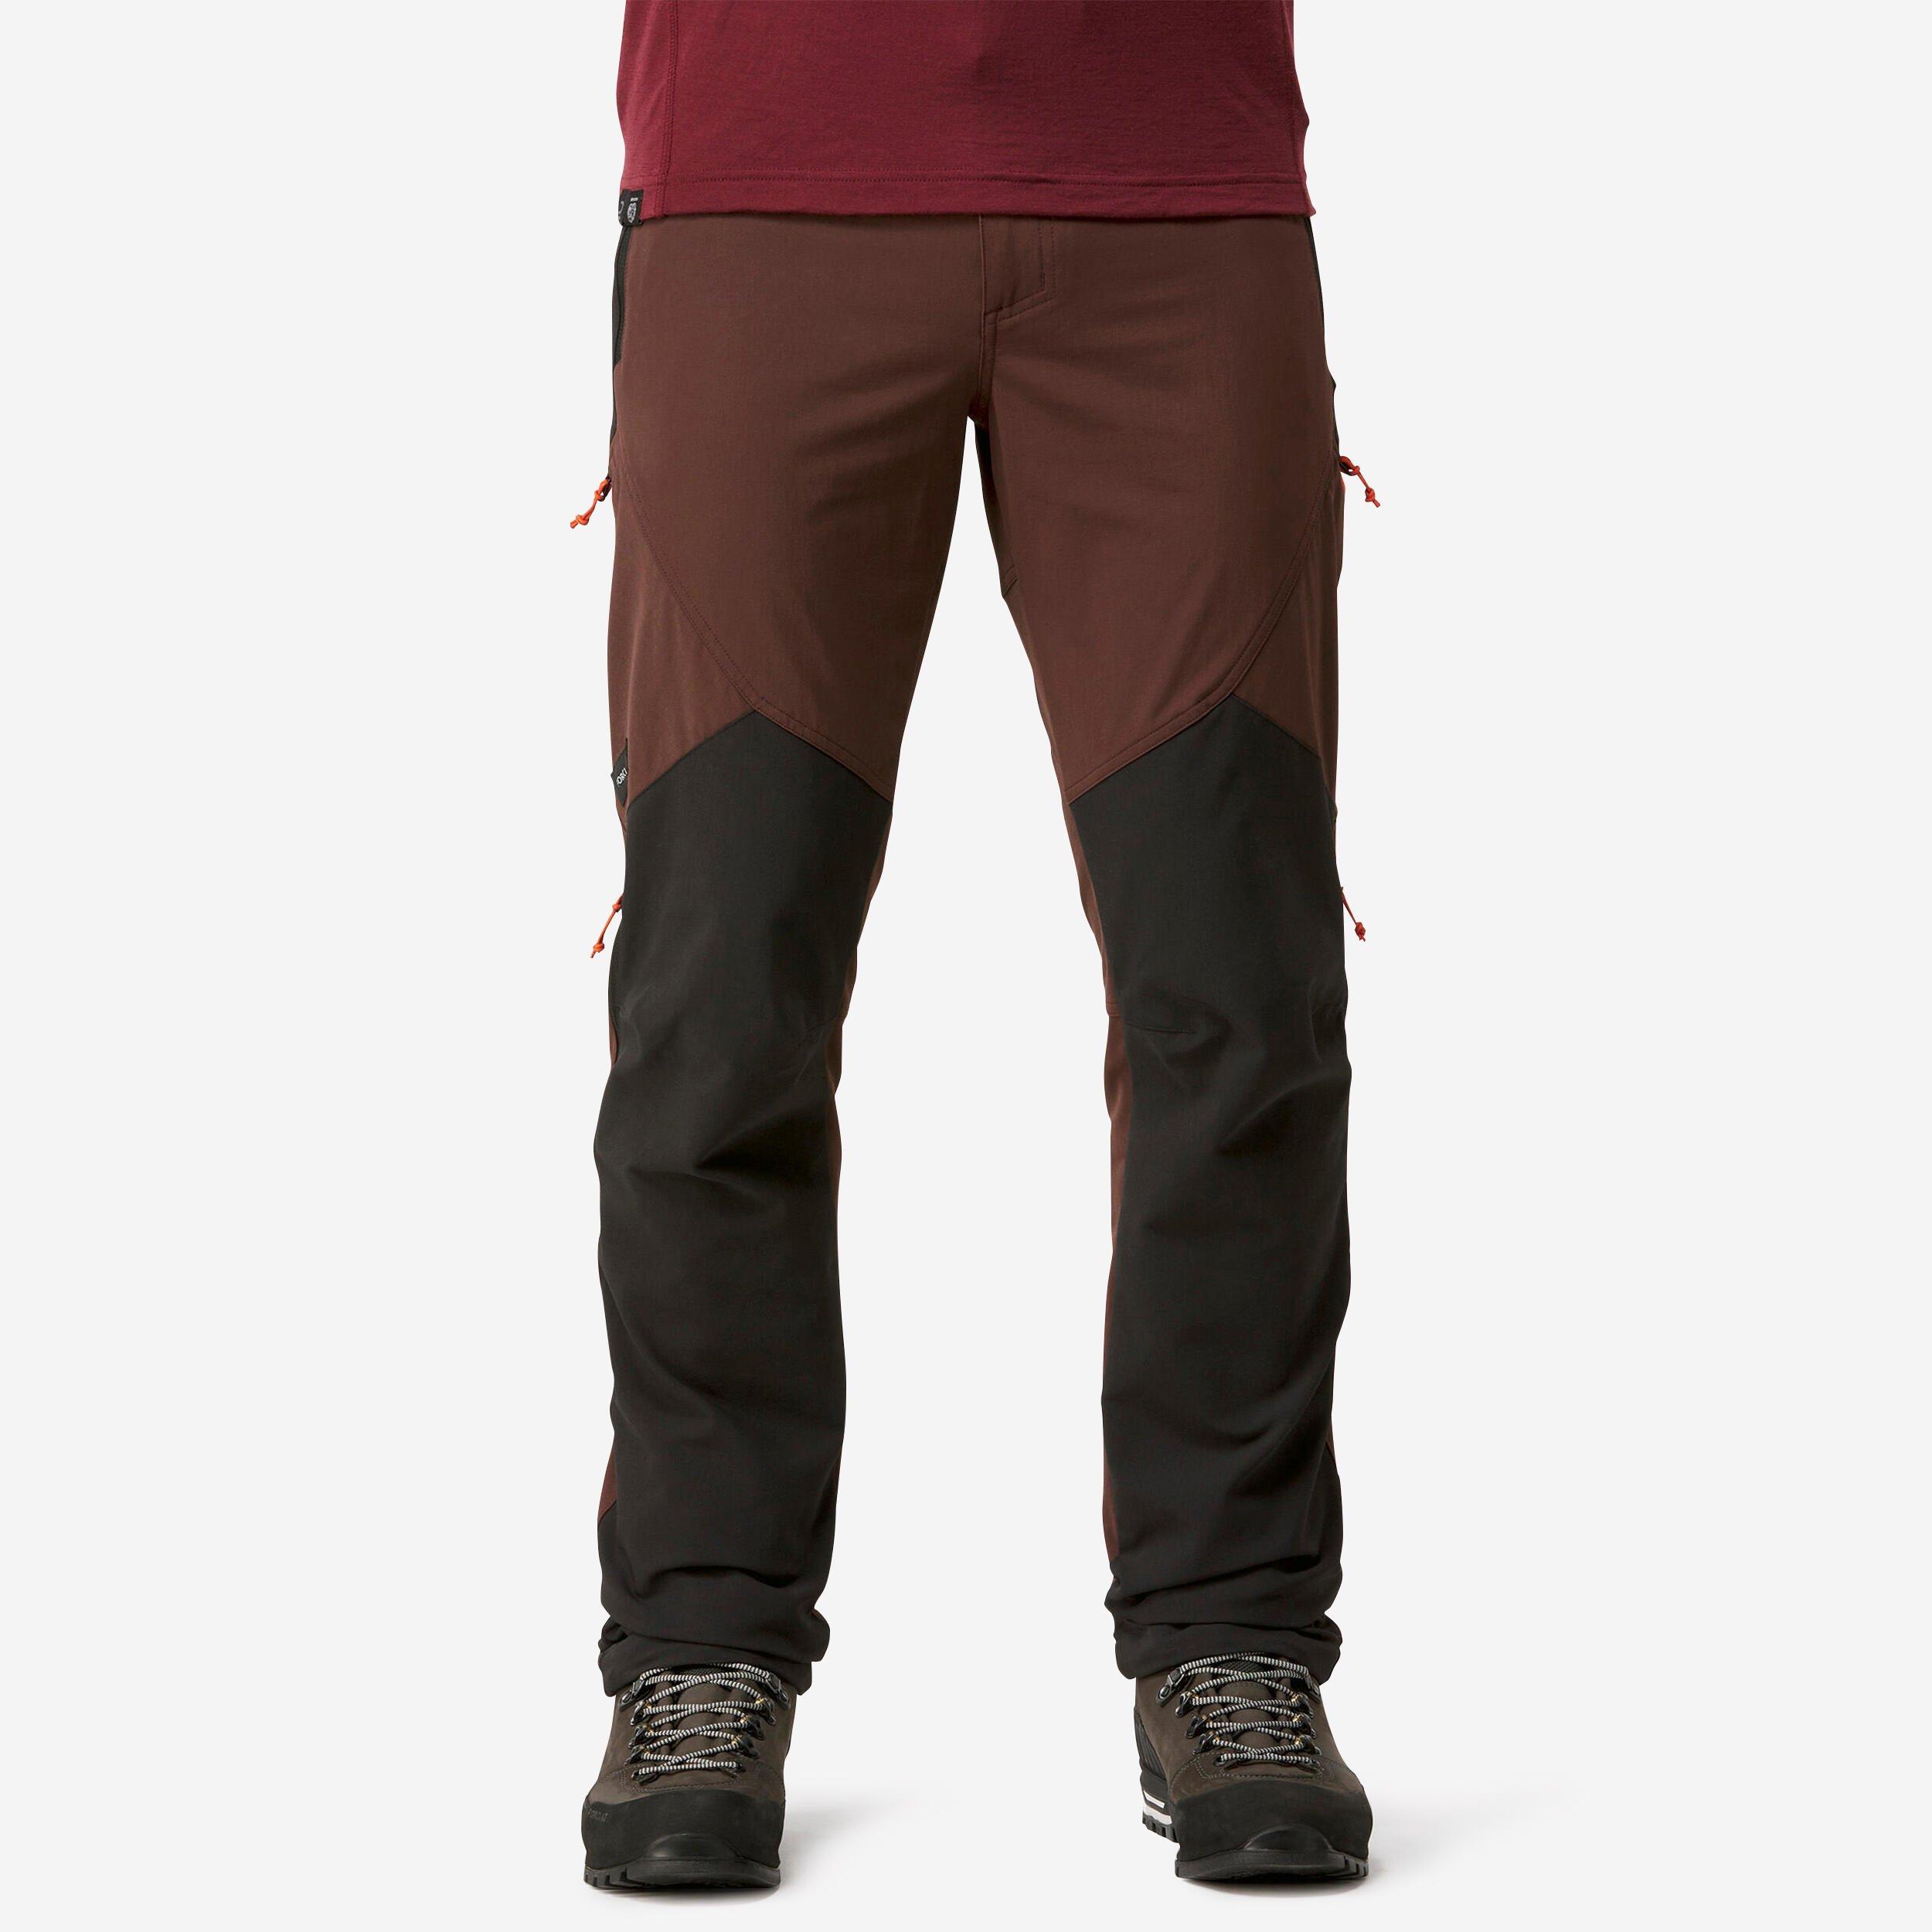 Collant/ legging sous-vêtement en laine mérinos de trek montagne Homme -  MT900 FORCLAZ